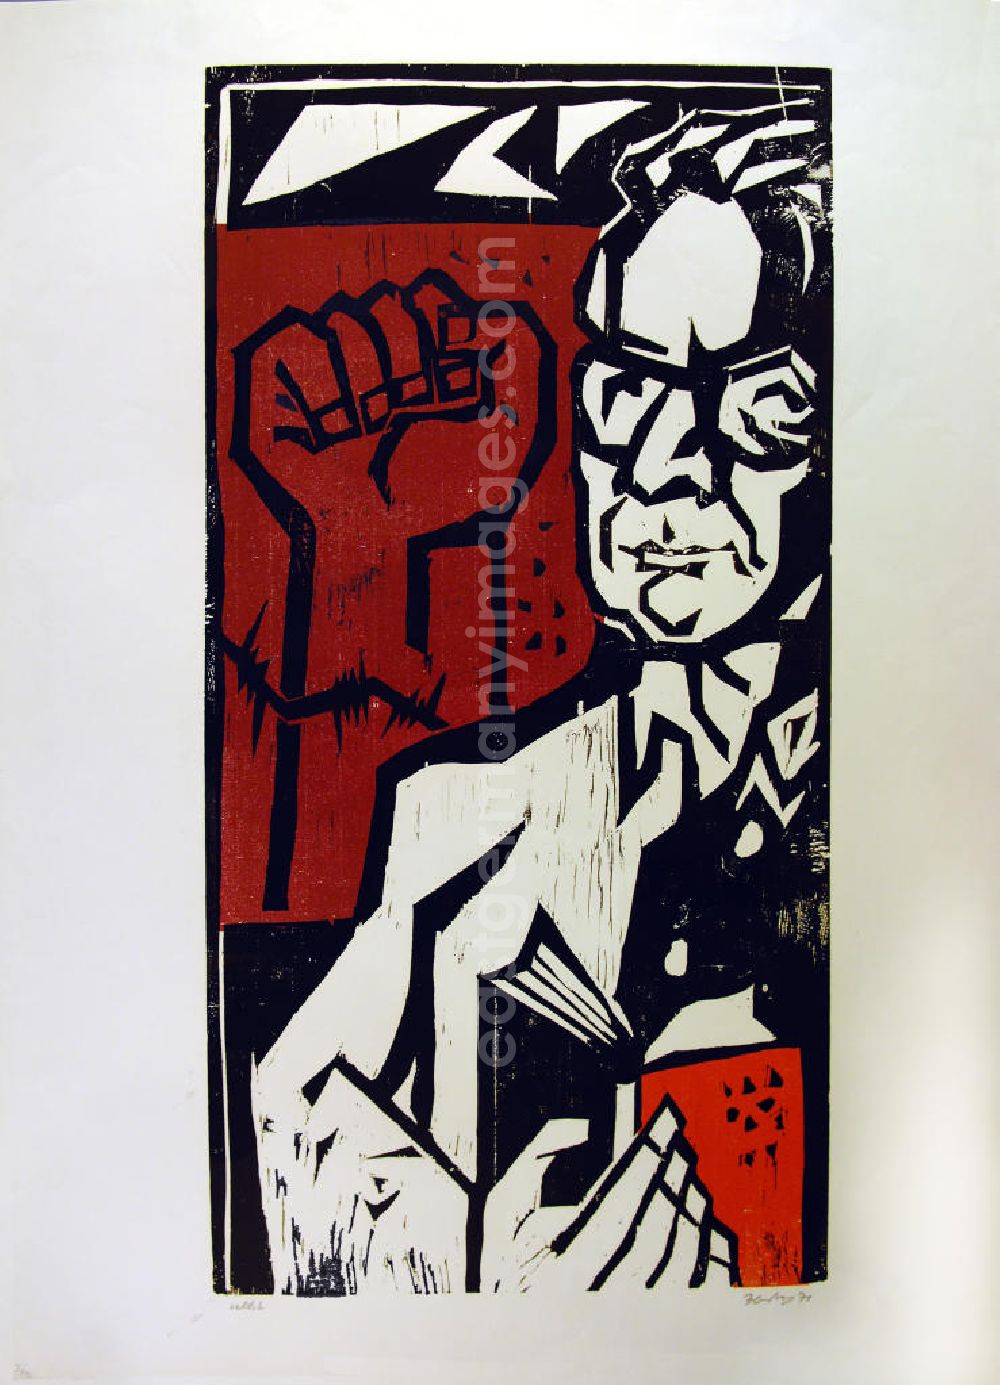 Berlin: Grafik von Herbert Sandberg Selbst aus dem Jahr 1976, 44,0x84,5cm Farbholzschnitt, handsigniert, 3/1